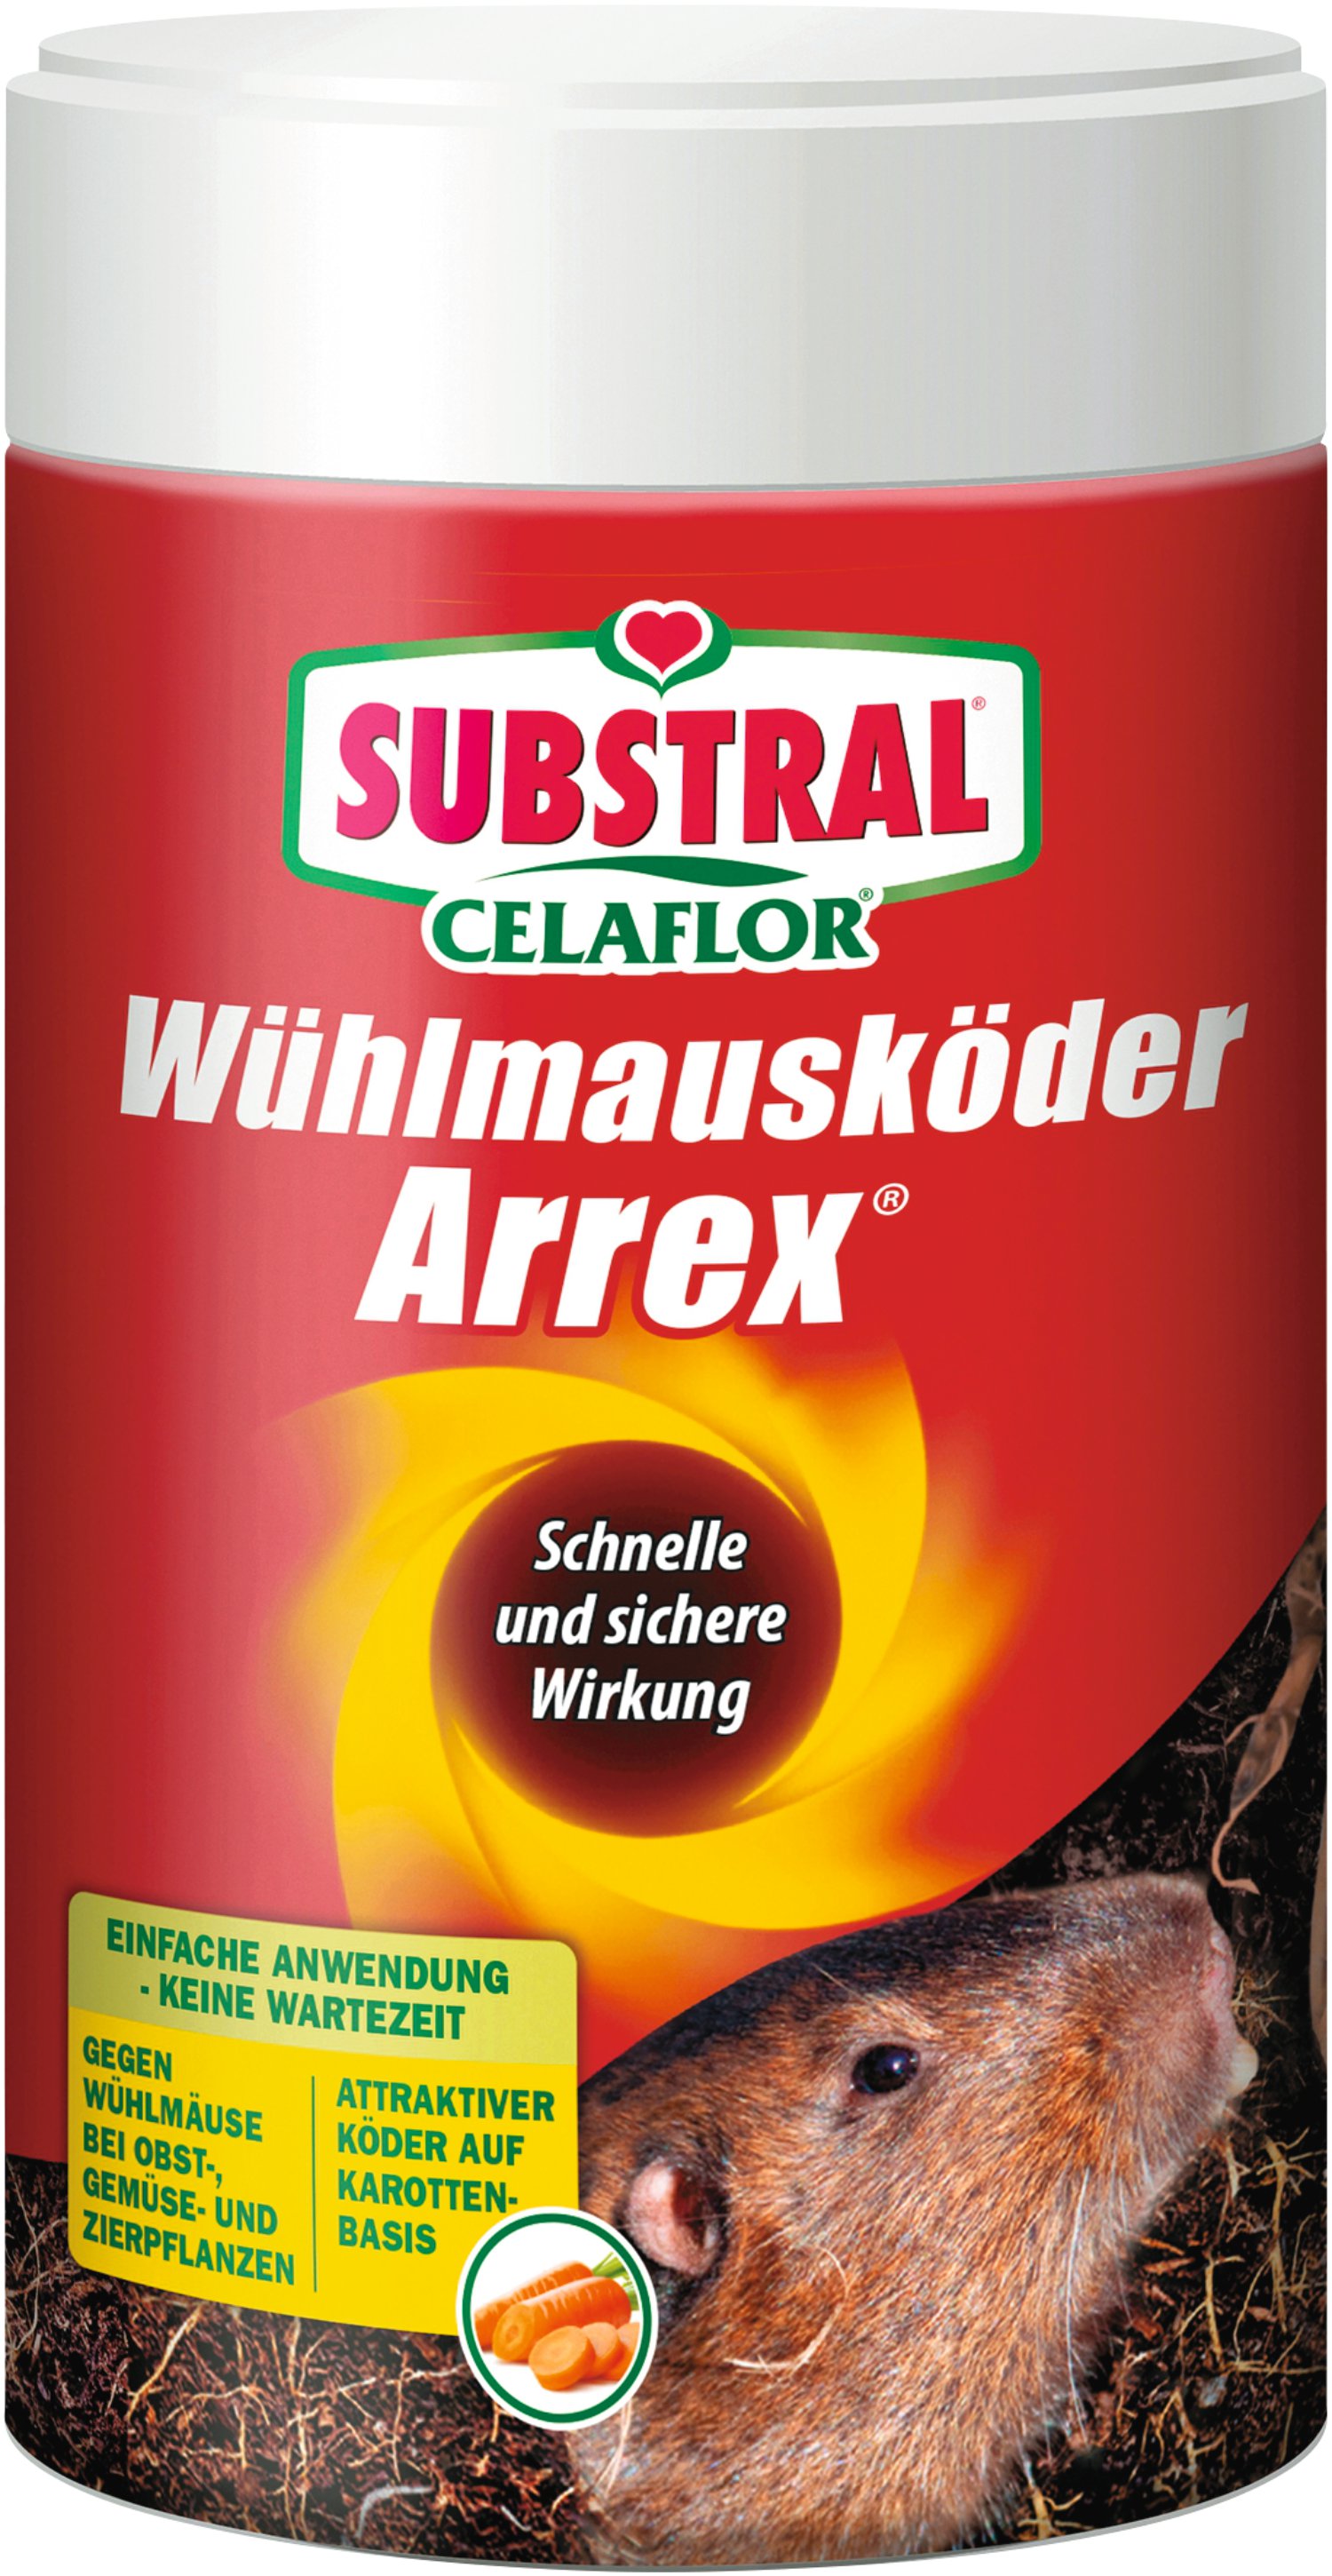 SUBSTRAL® Celaflor® Wühlmausköder Arrex® 250 g